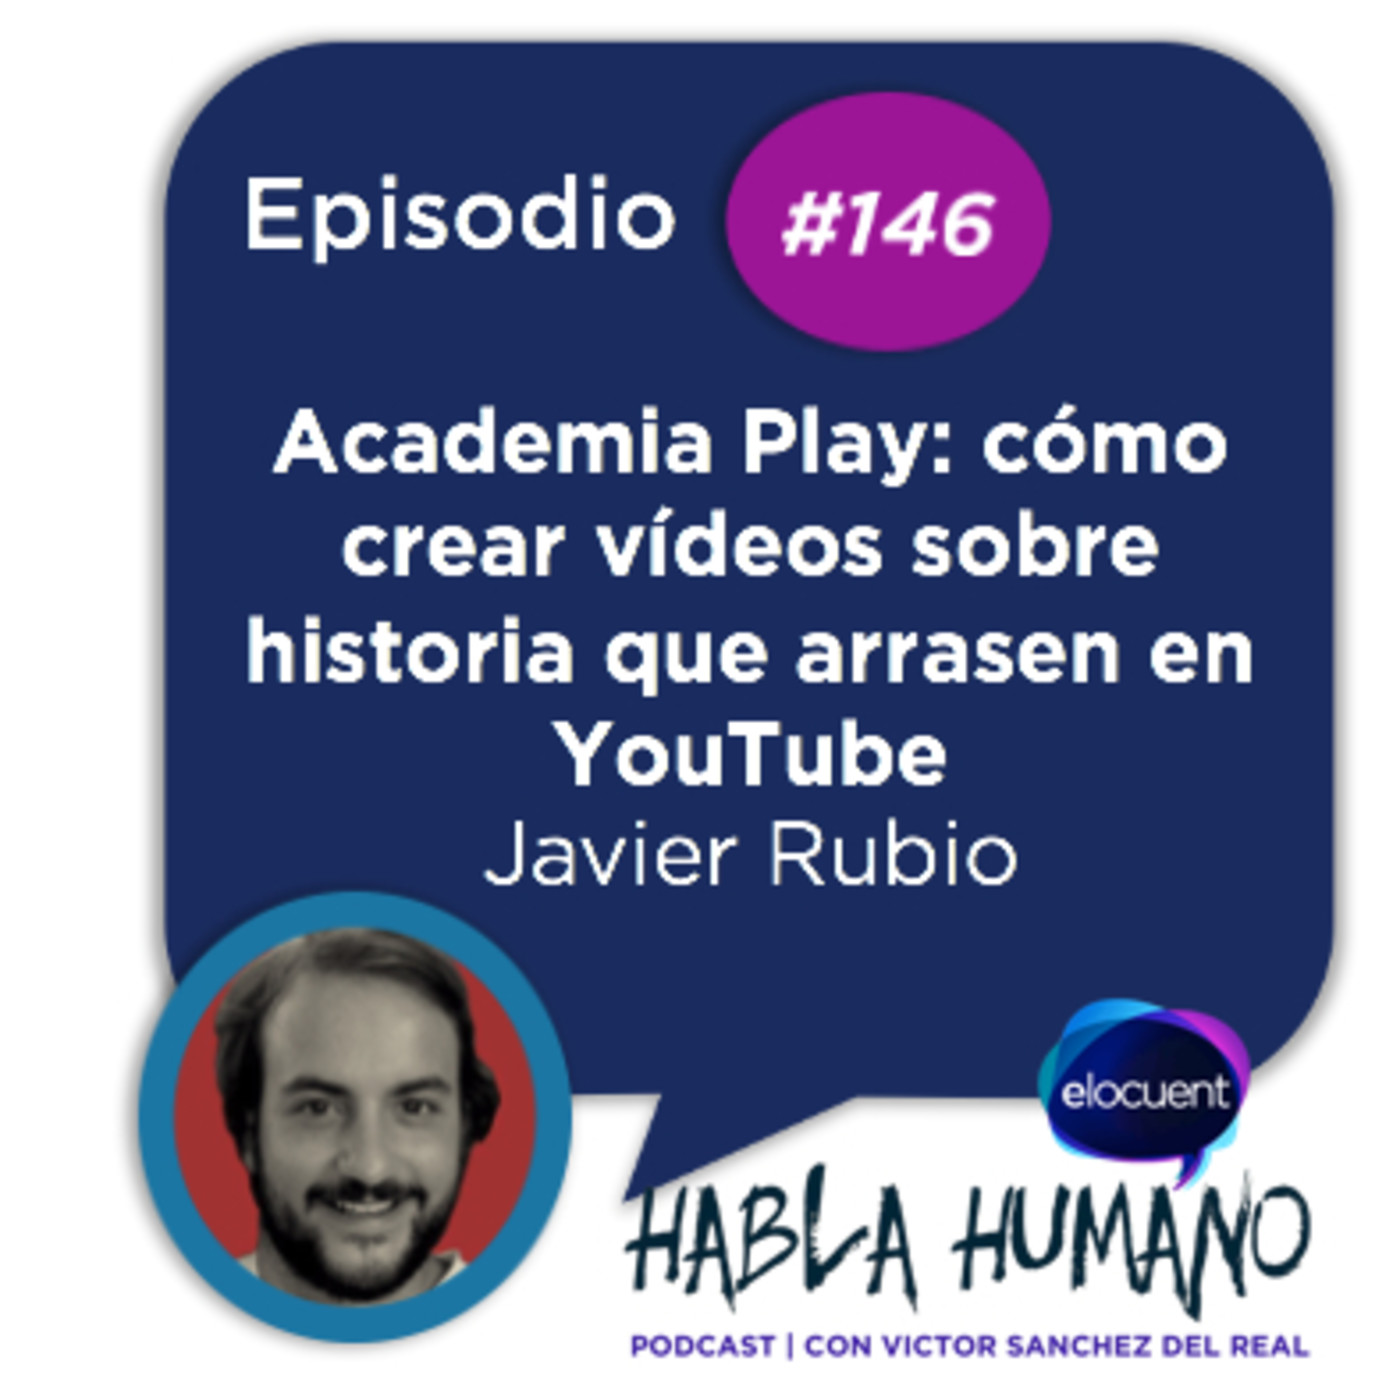 Habla Humano #146|Academia Play: cómo crear vídeos sobre historia que arrasen en YouTube